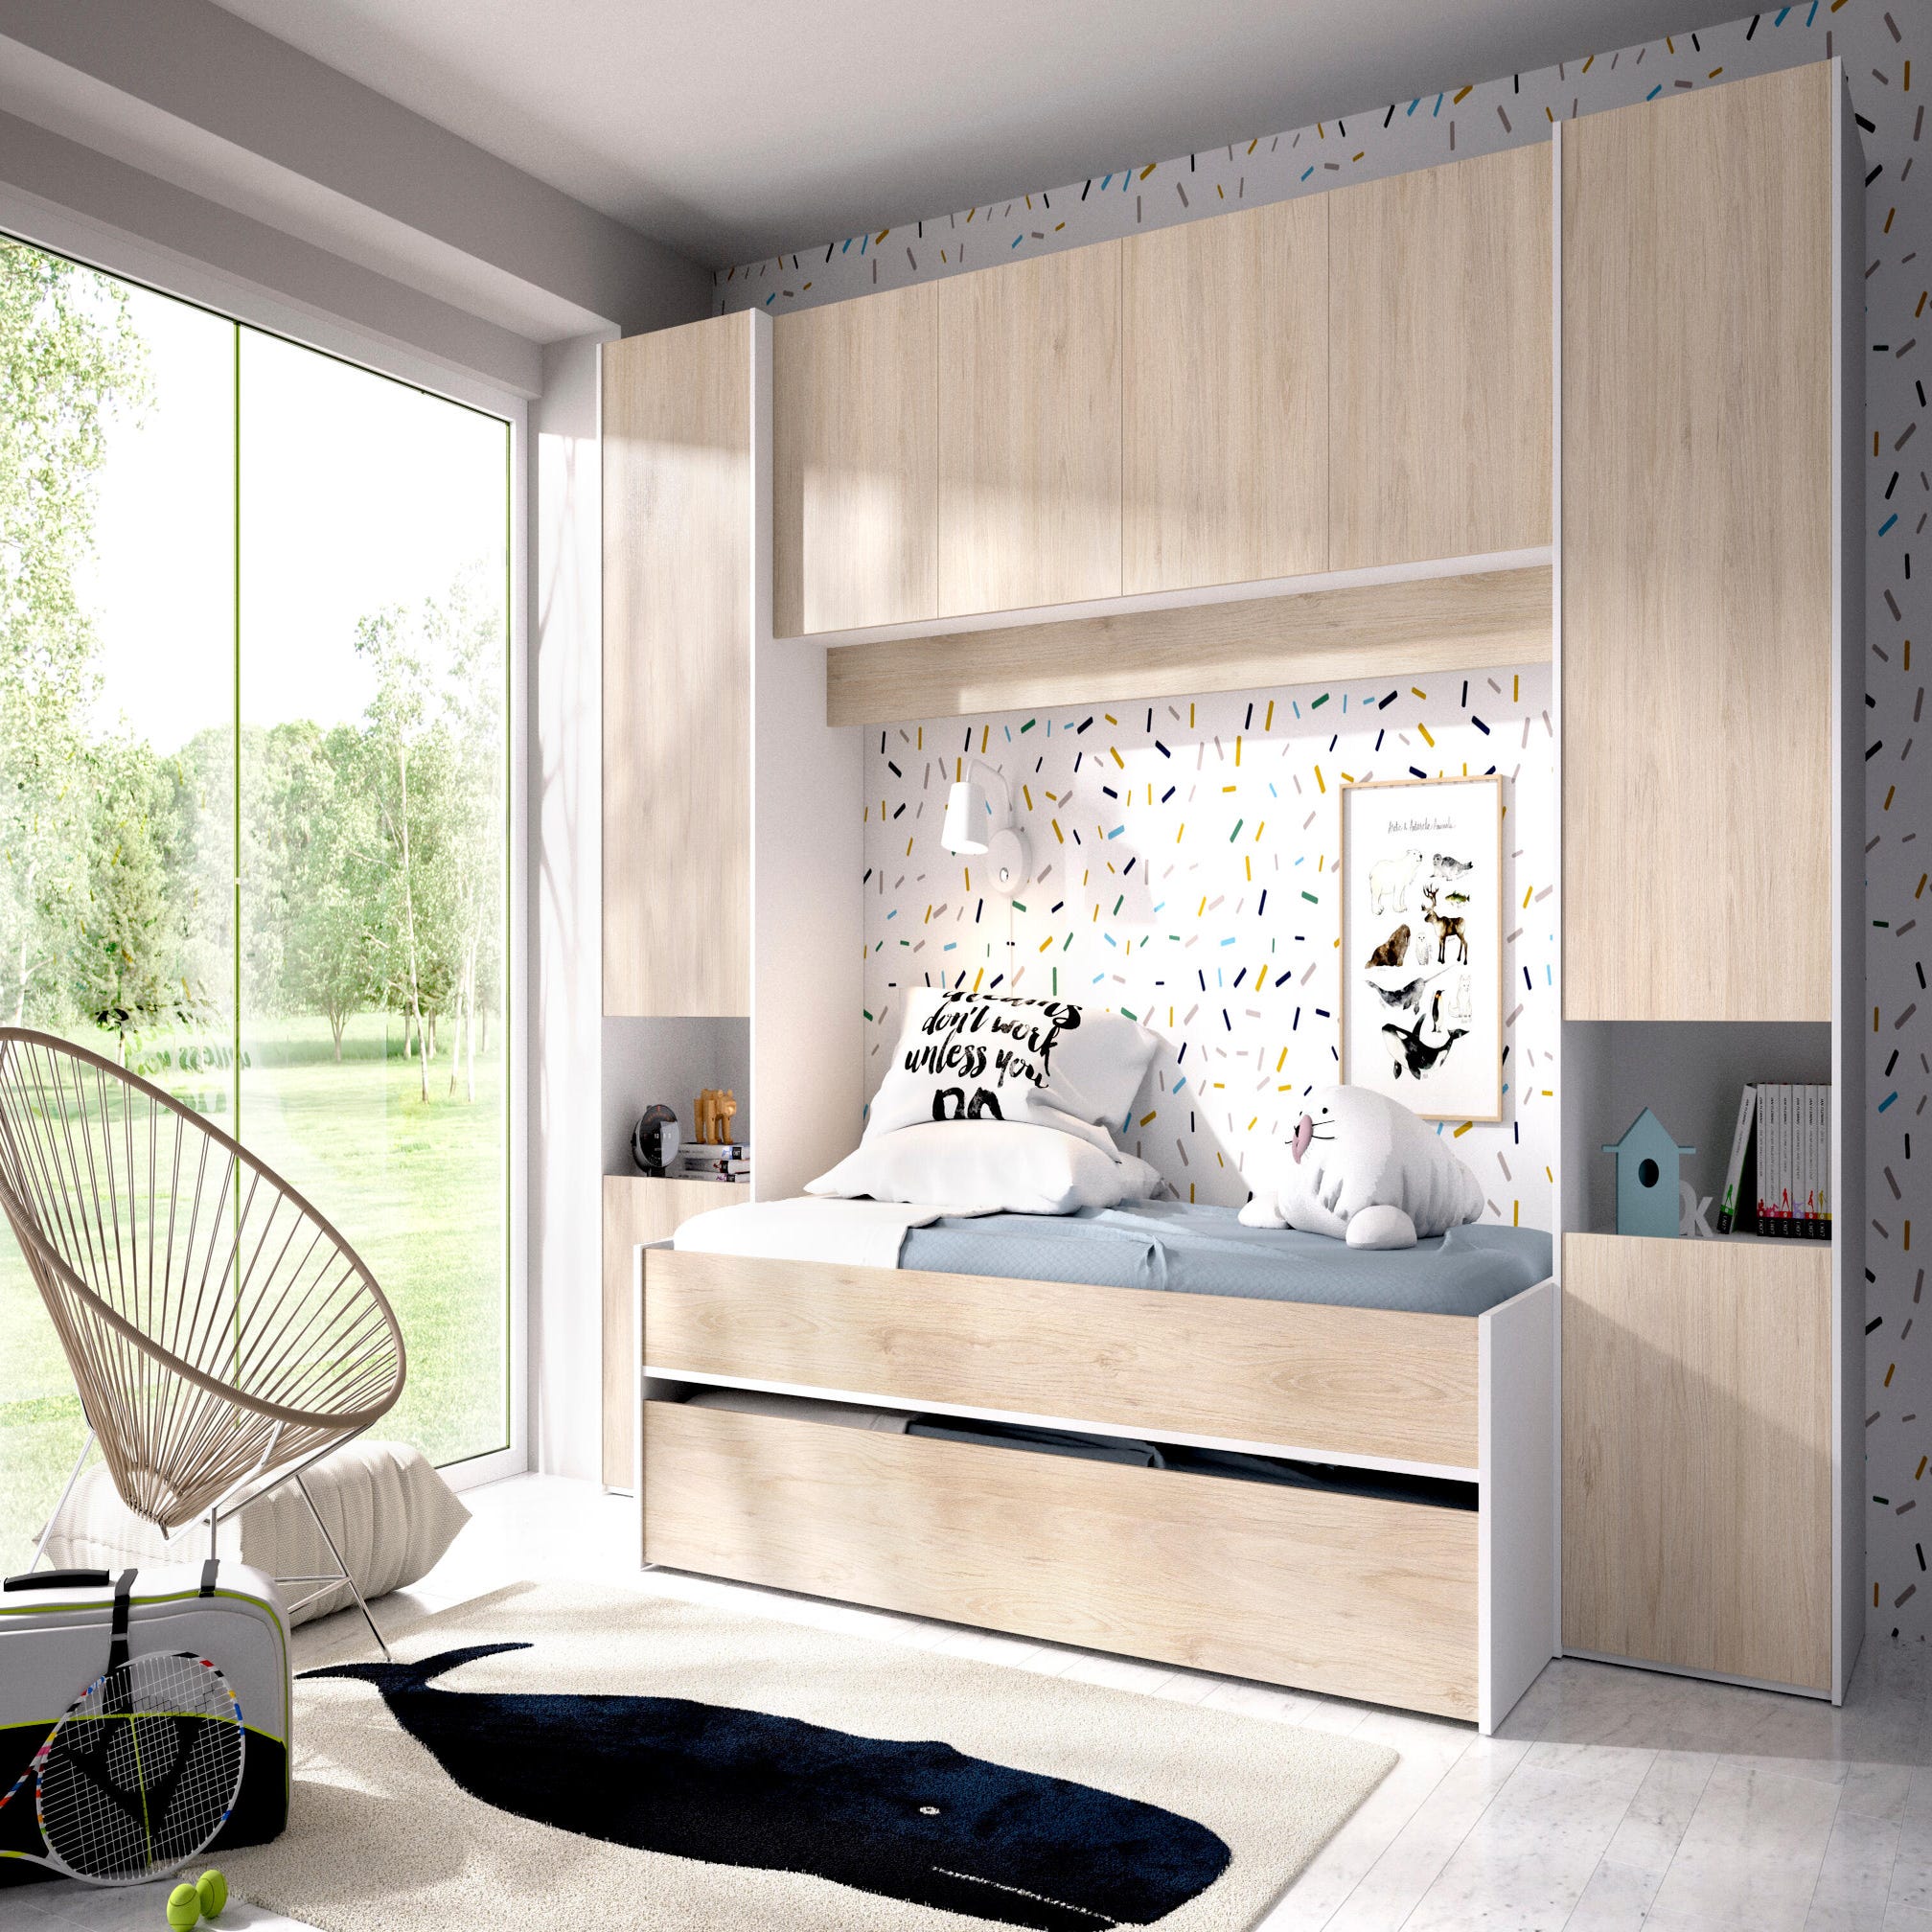 Dormitorio infantil con armario, cama nido de 4 cajones y escritorio.